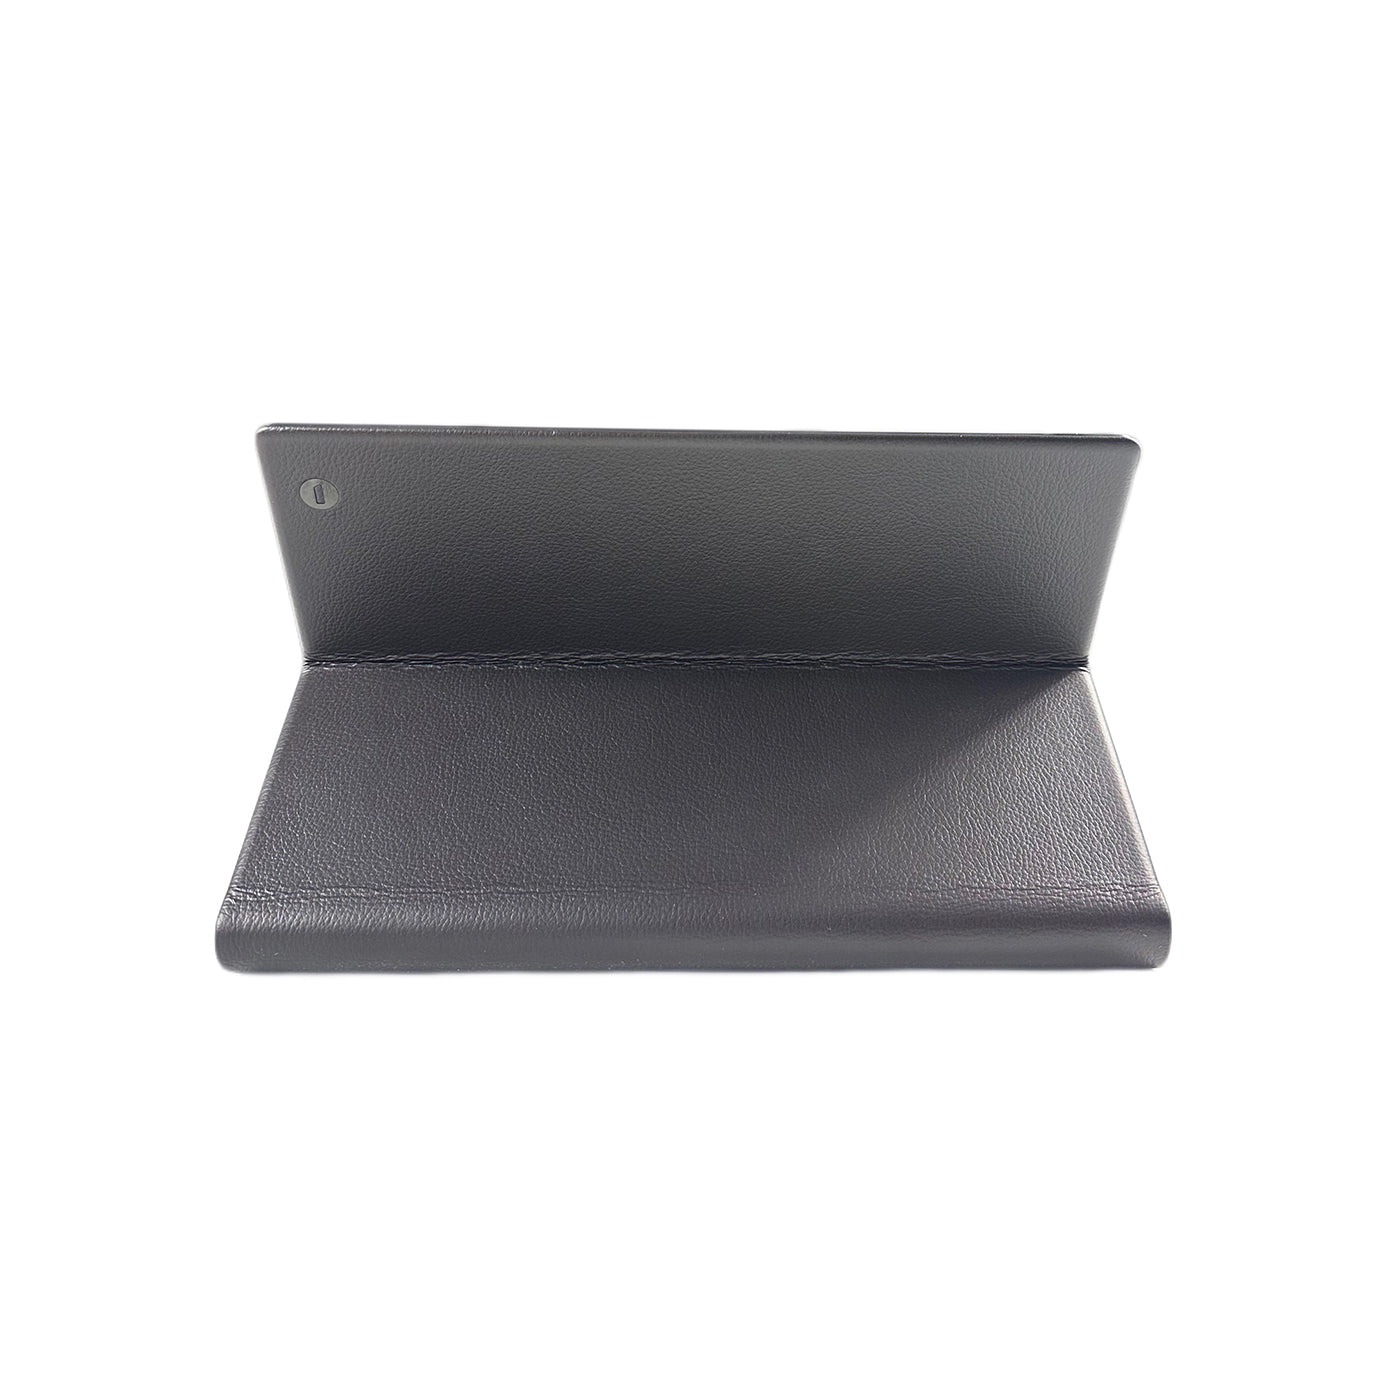 Noteboook T5 | 16GB Ram | pantalla 10.1'' | Intel Core i7 1250U | GRAPHICS MAX DYNAMIC